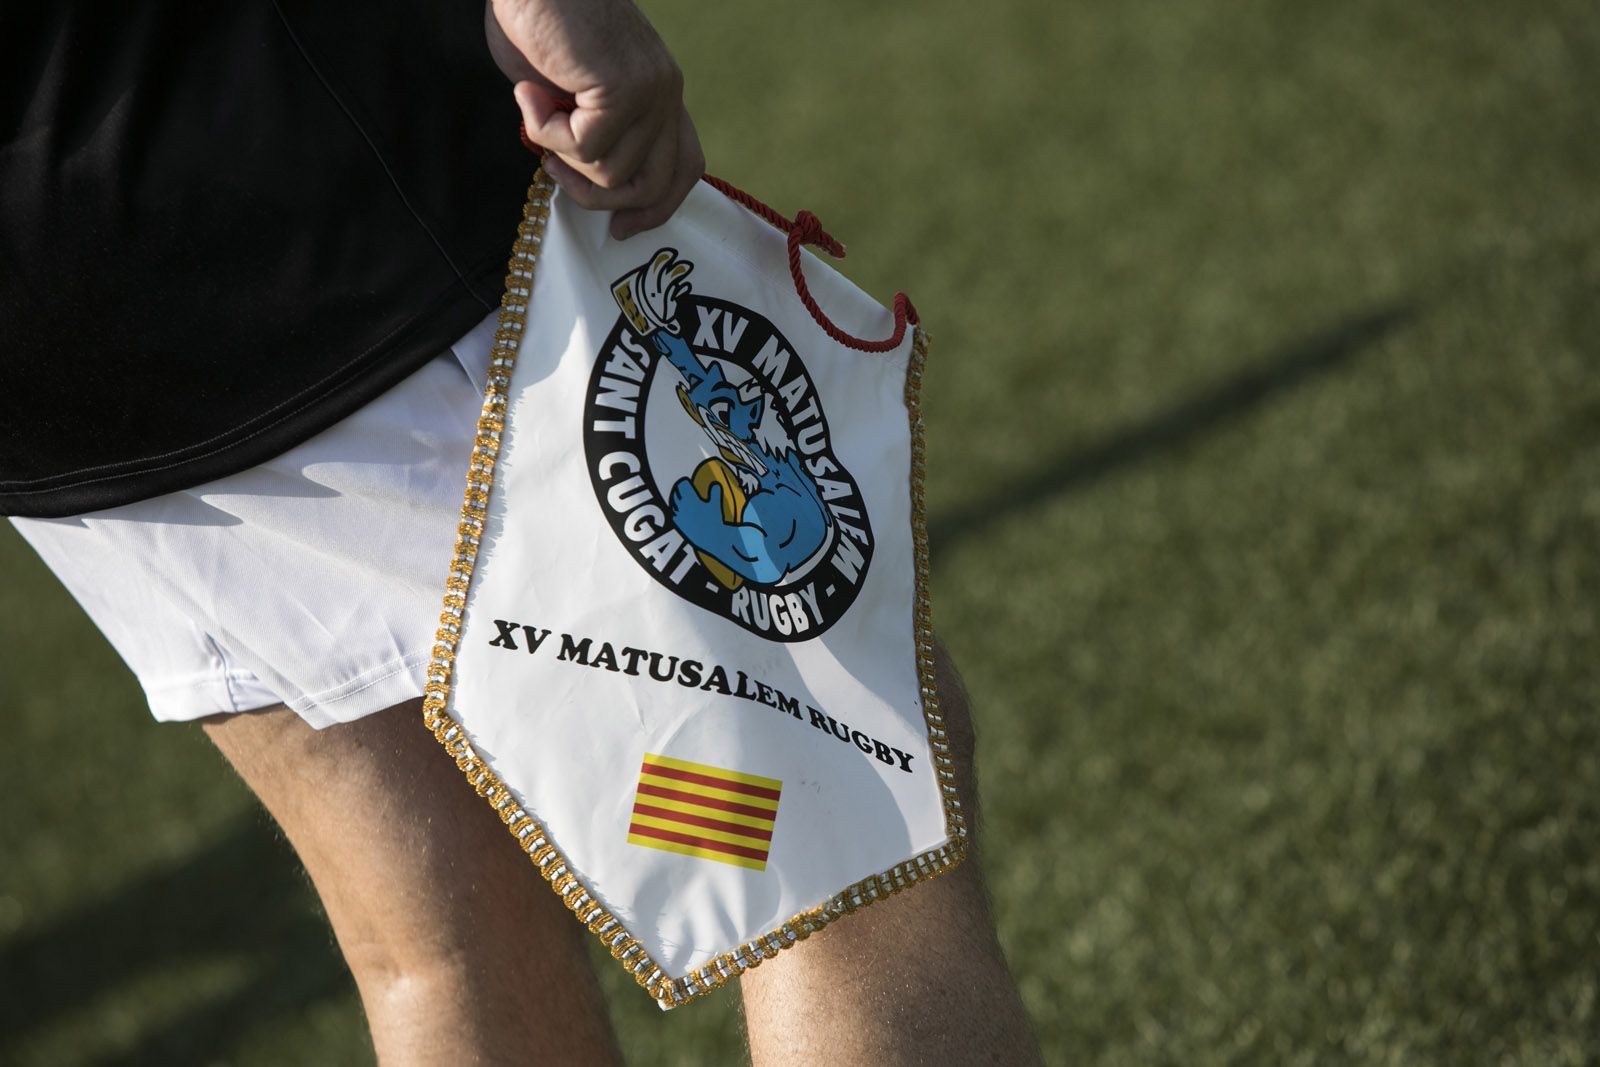 Un banderí dels XV Matusalem del Club de Rugby Sant Cugat. FOTO: Lali Puig